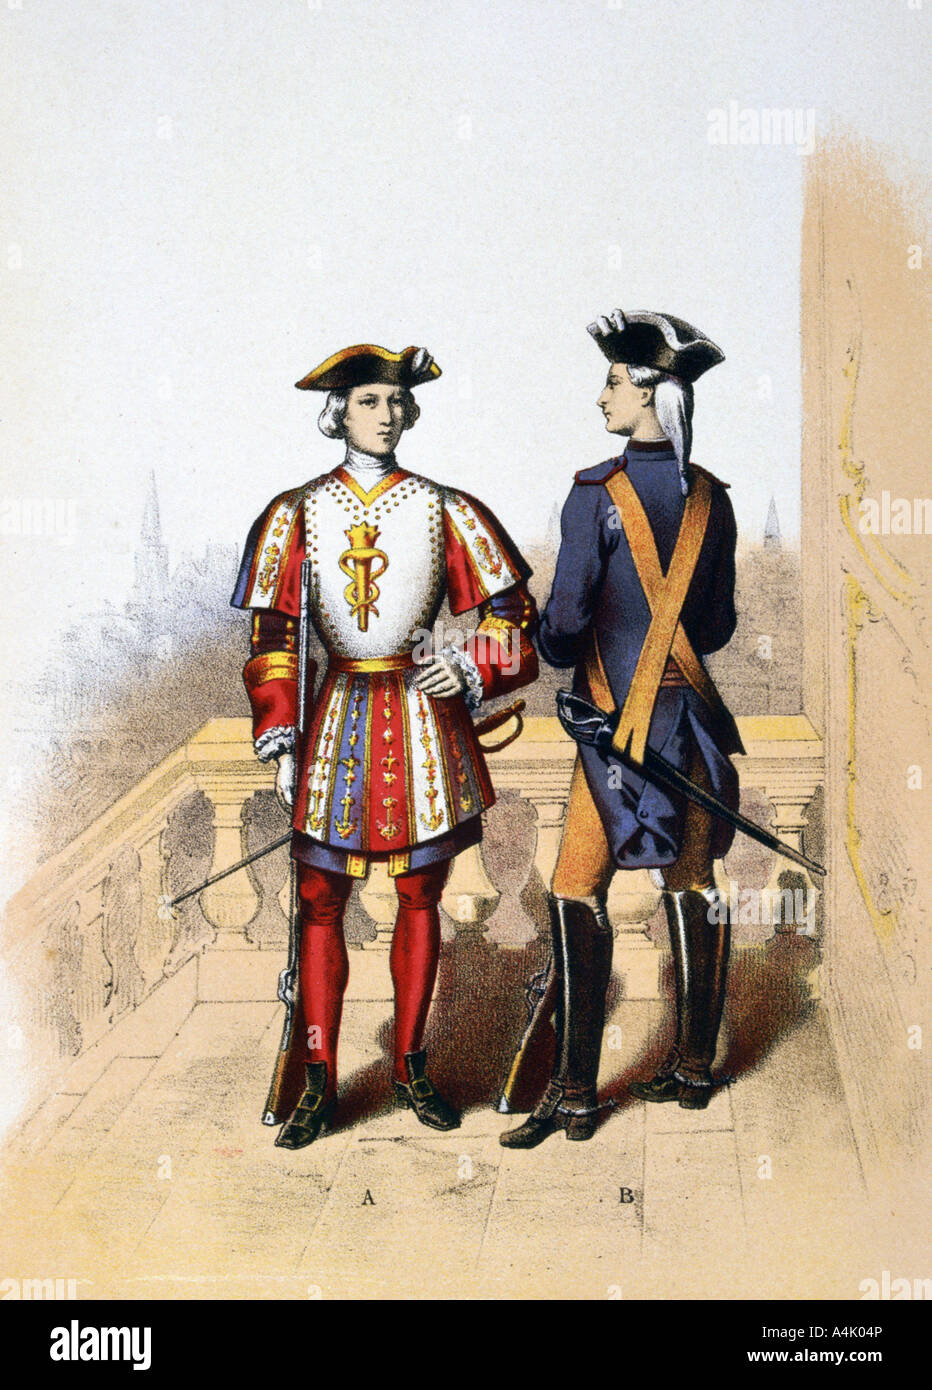 Guardia Reale del Re e cavalier, XVIII secolo (1887). Artista: Un Lemercier Foto Stock